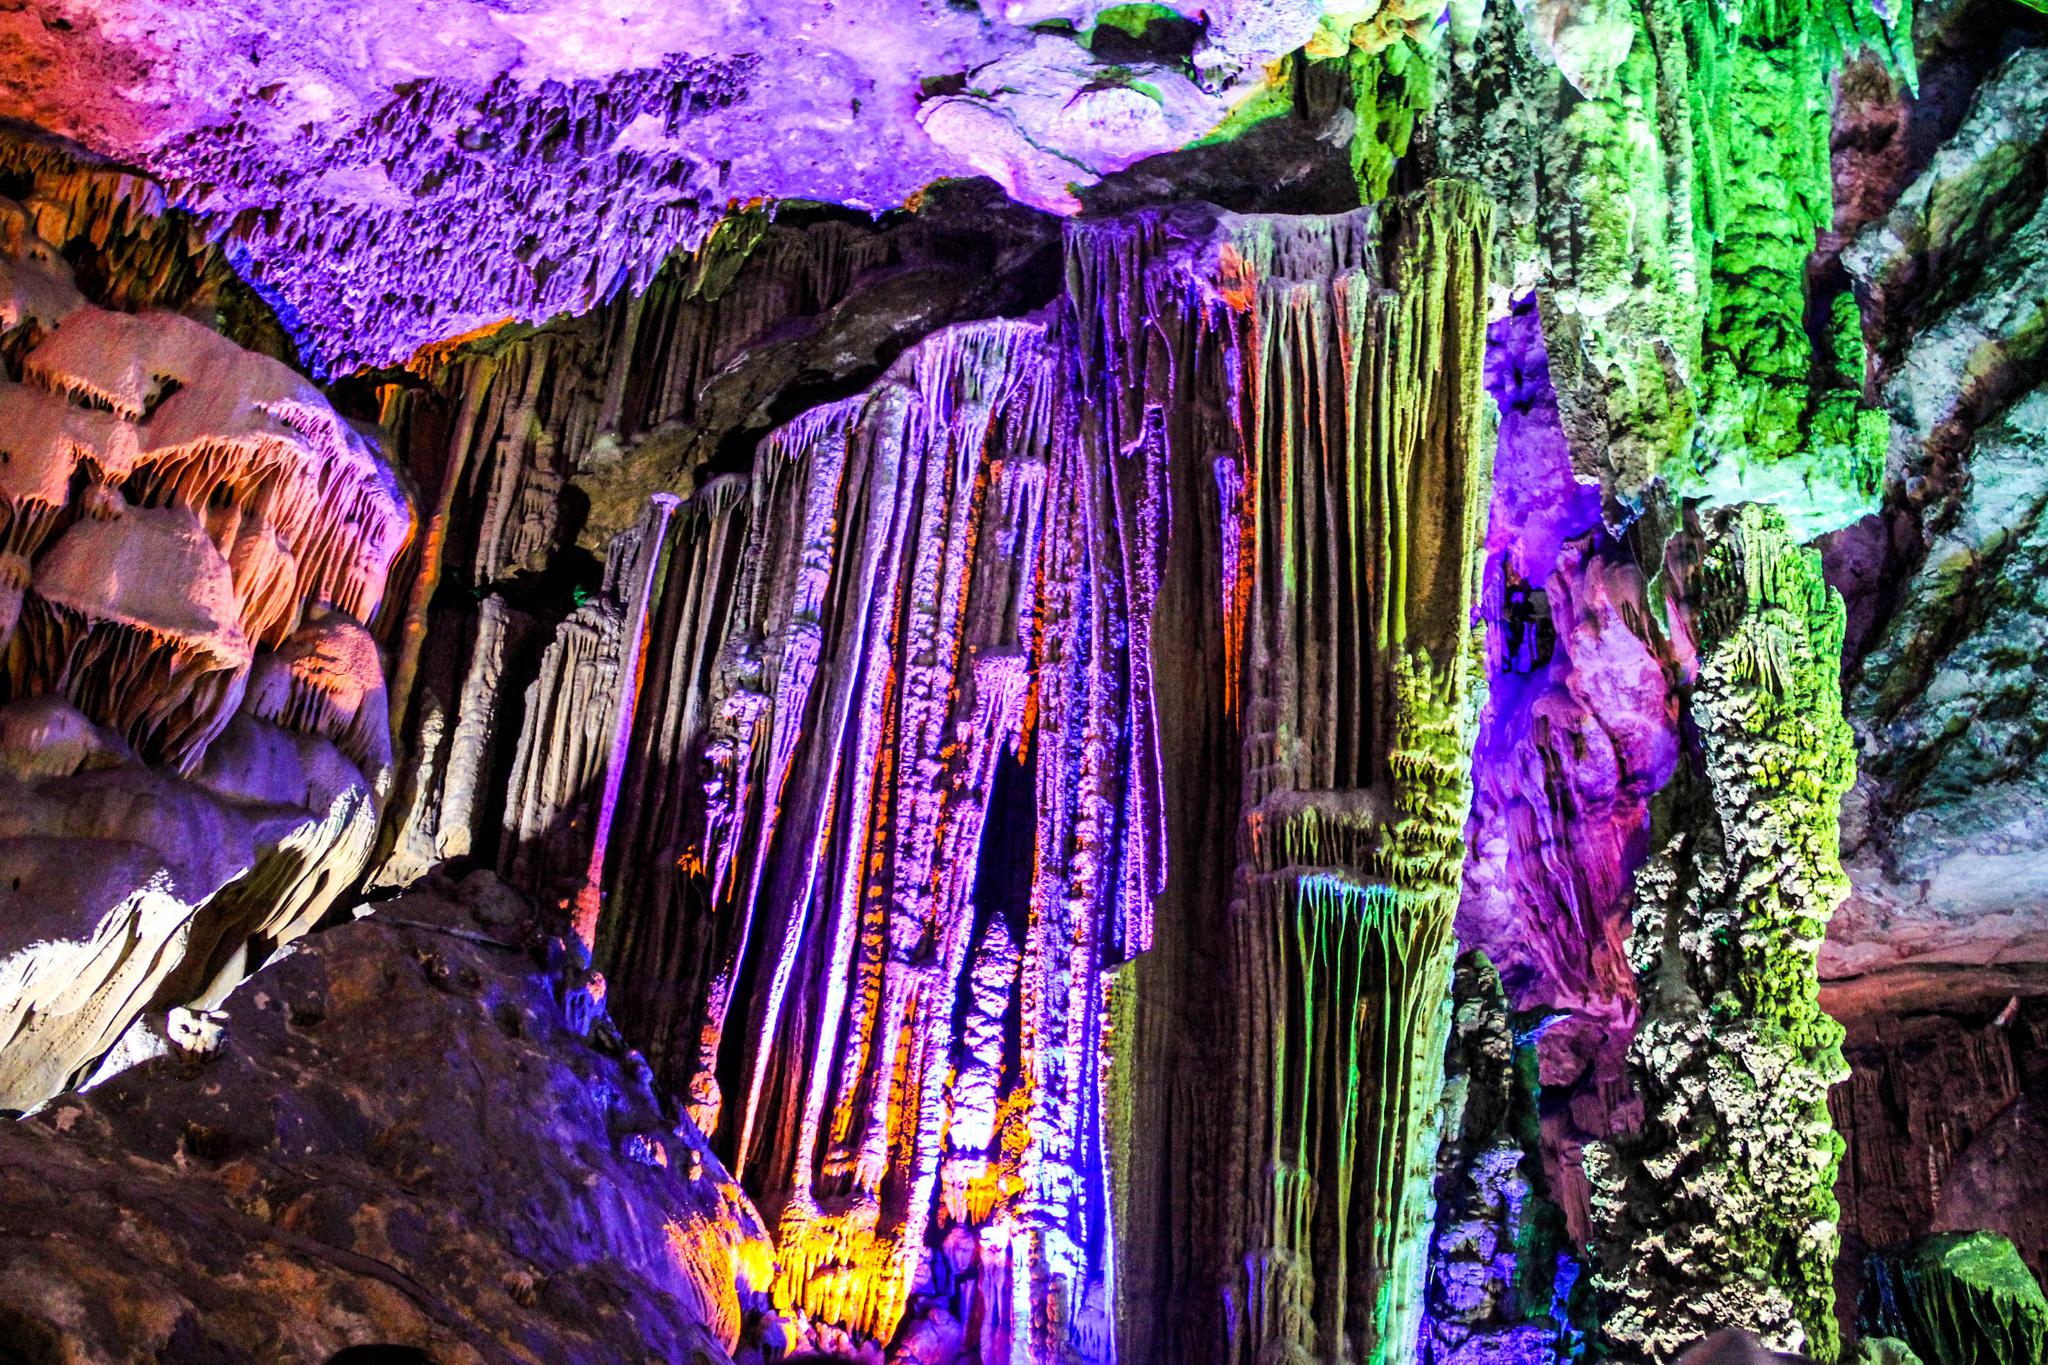 桂林银子岩:中国最美的溶洞景观,里面别有洞天